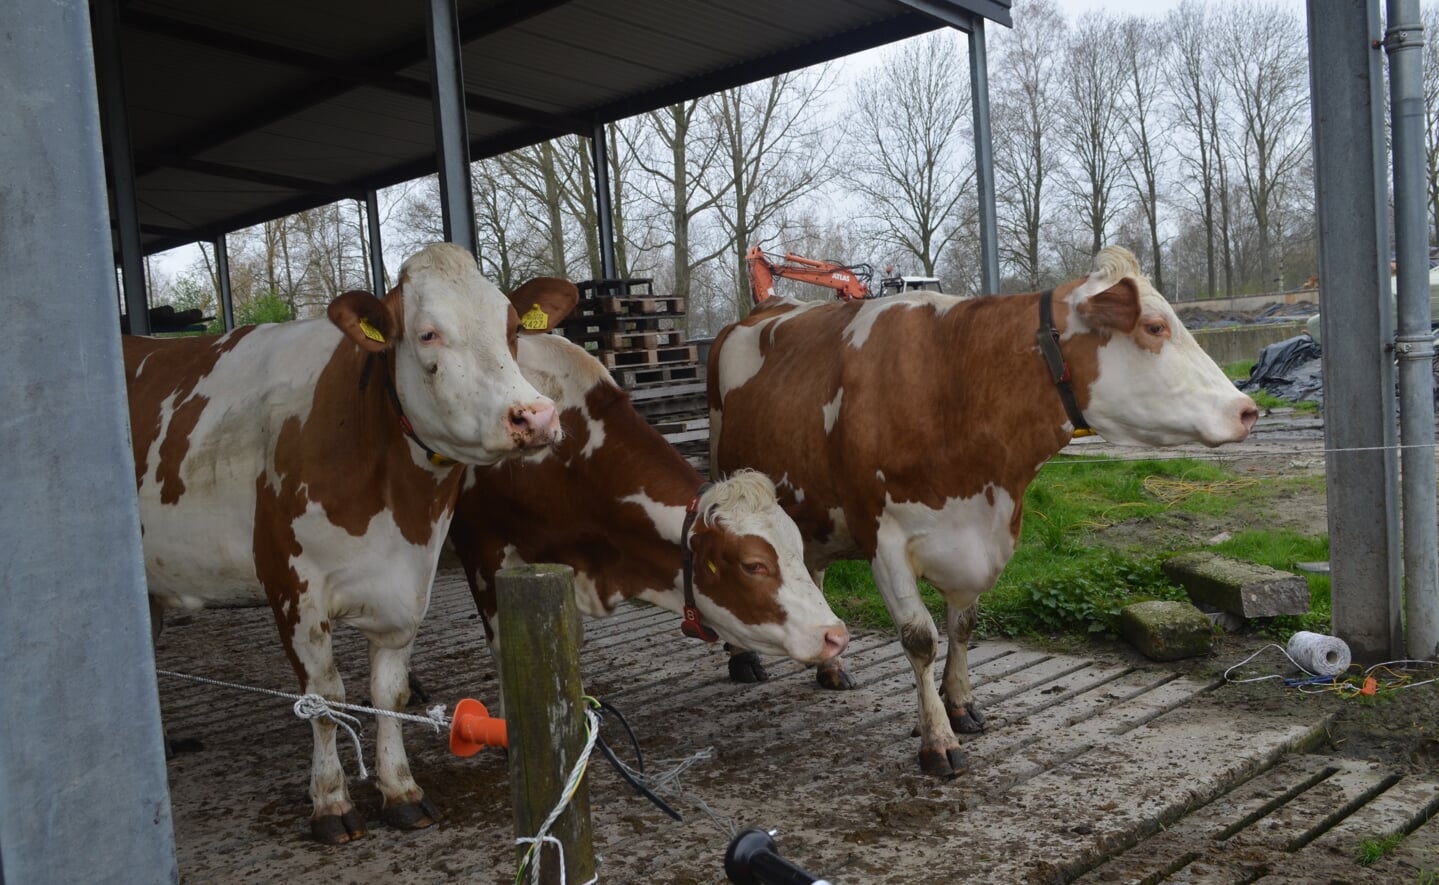 De koeien van boerderij 't Dommeltje mochten zaterdag weer voor het eerst de wei in na de winter. De vrolijk dartelende beesten konden op veel publiek rekenen. 